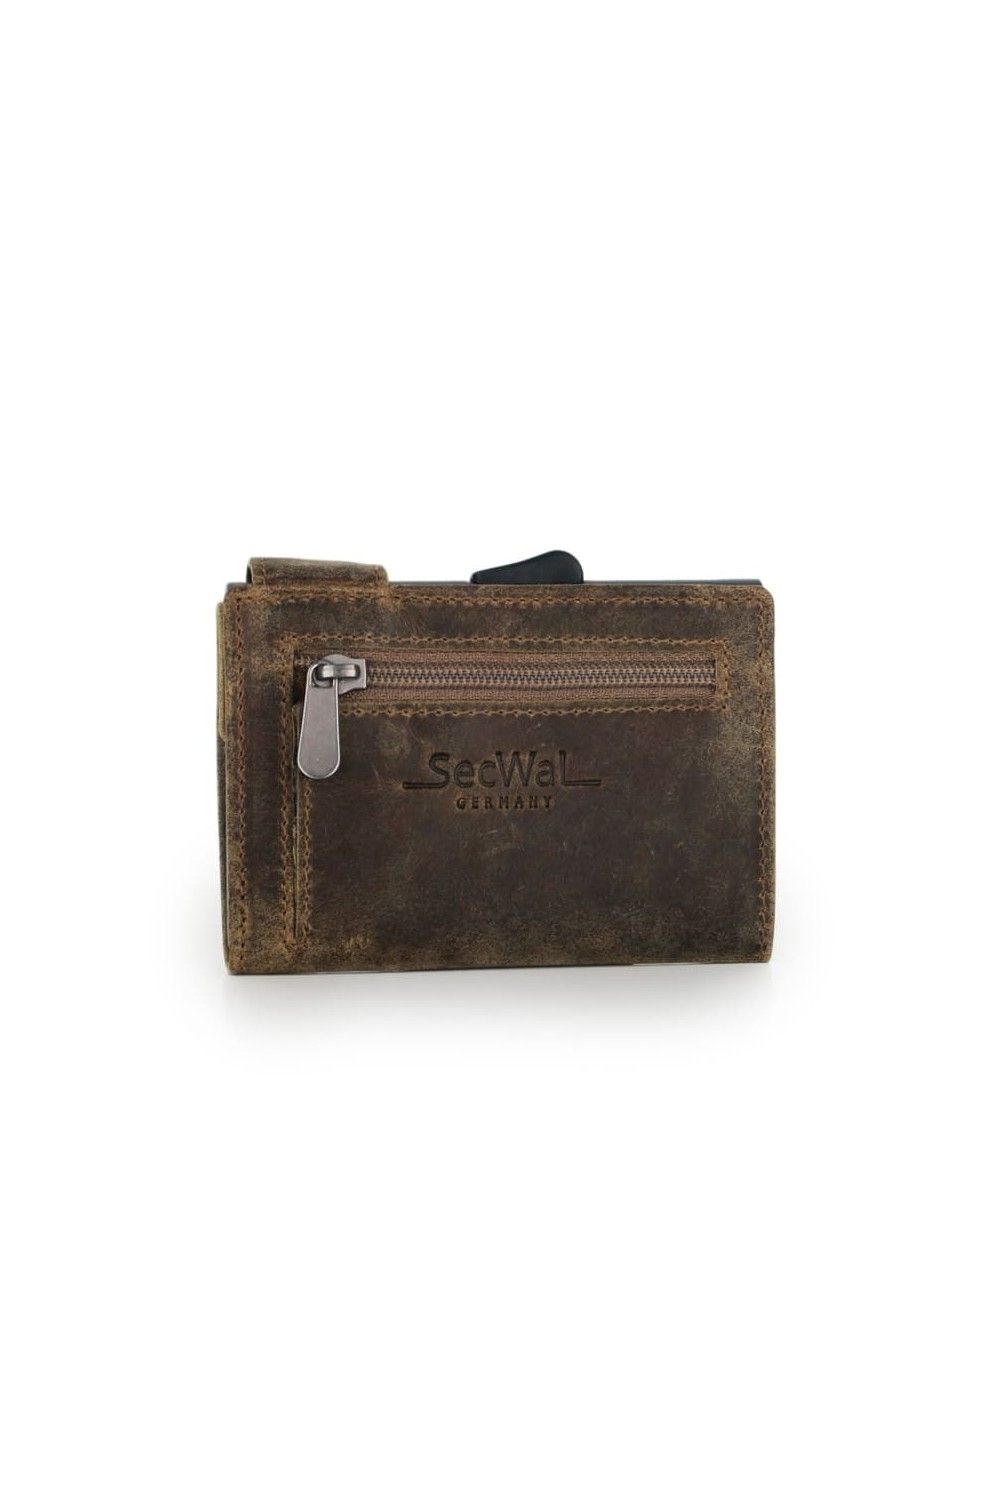 SecWal Card Case XL RV Leather Hunter